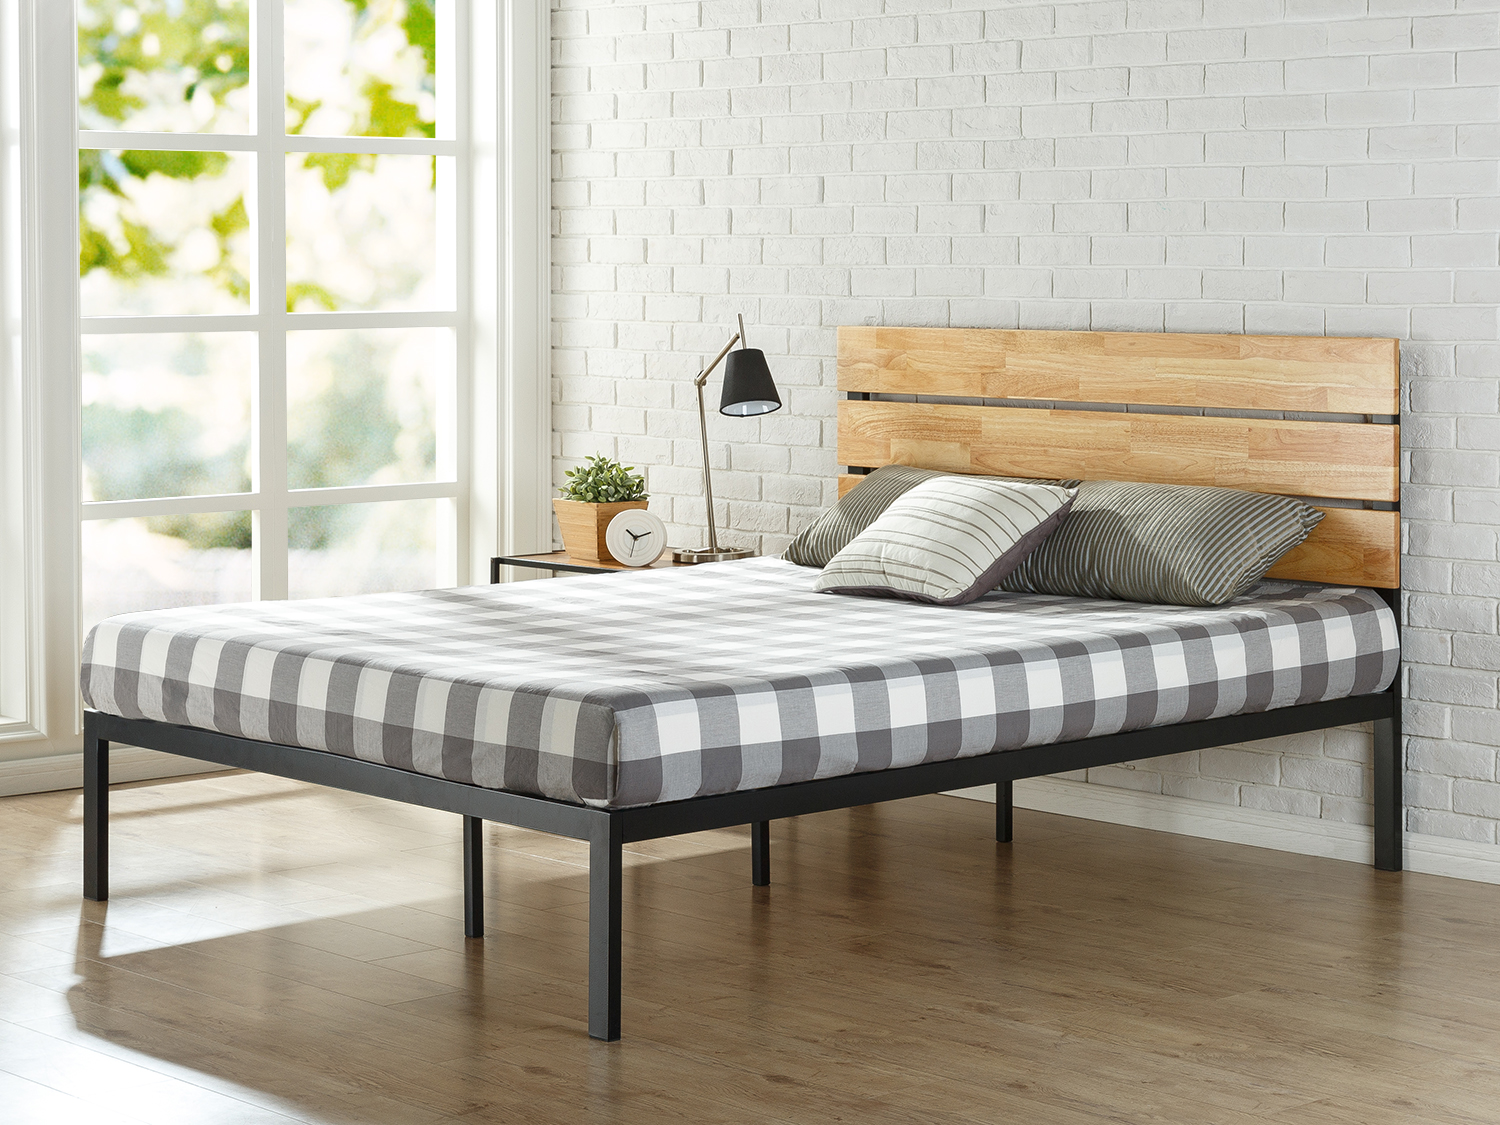 Zinus Paul Metal Wood Platform Bed, Wooden Platform Bed Frame Full